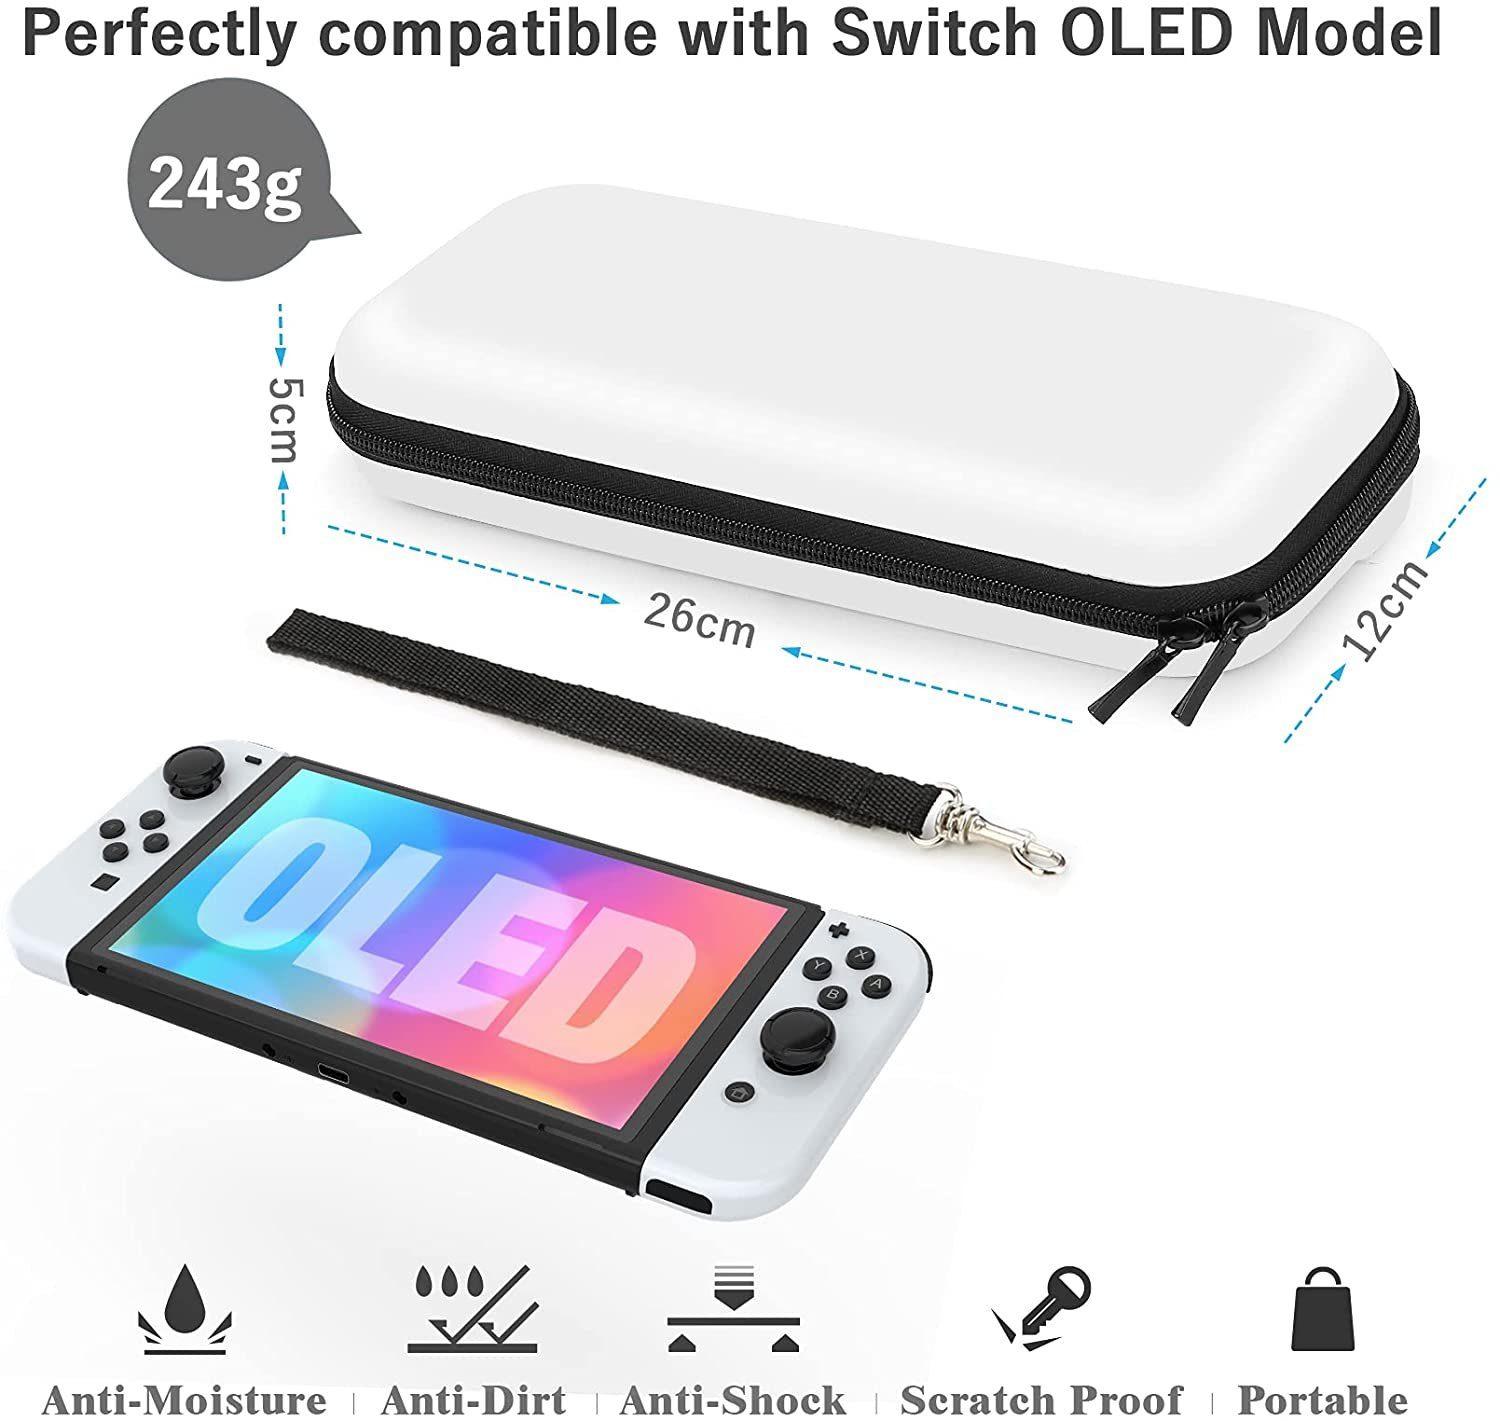 Zubehörpaket Für Nintendo Switch Oled, 1 X Verstellbare Halterung